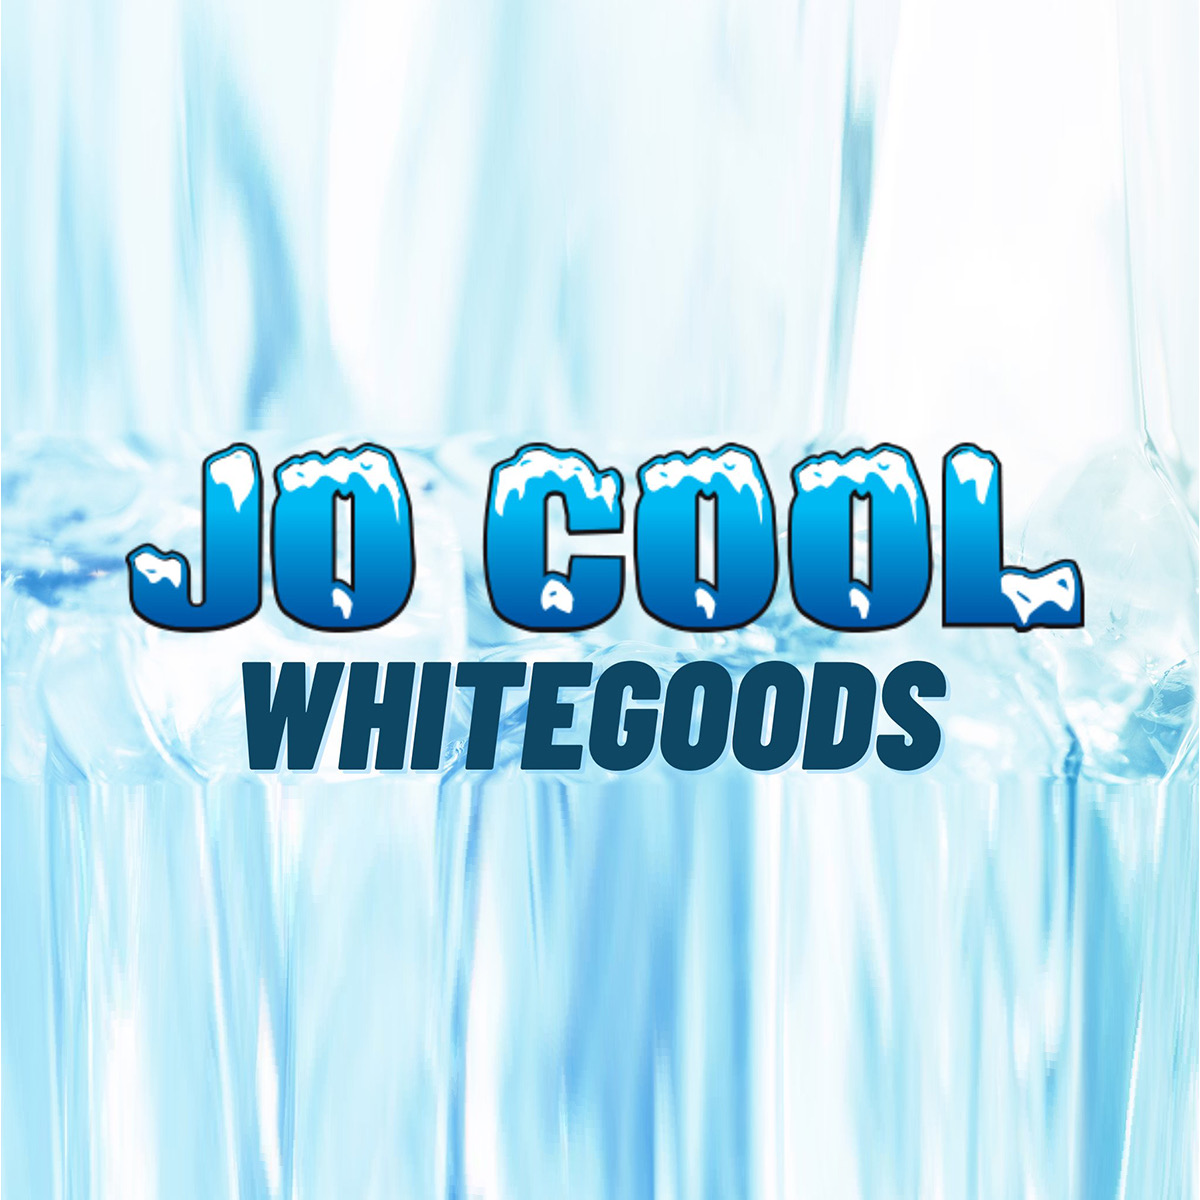 White Goods Perth